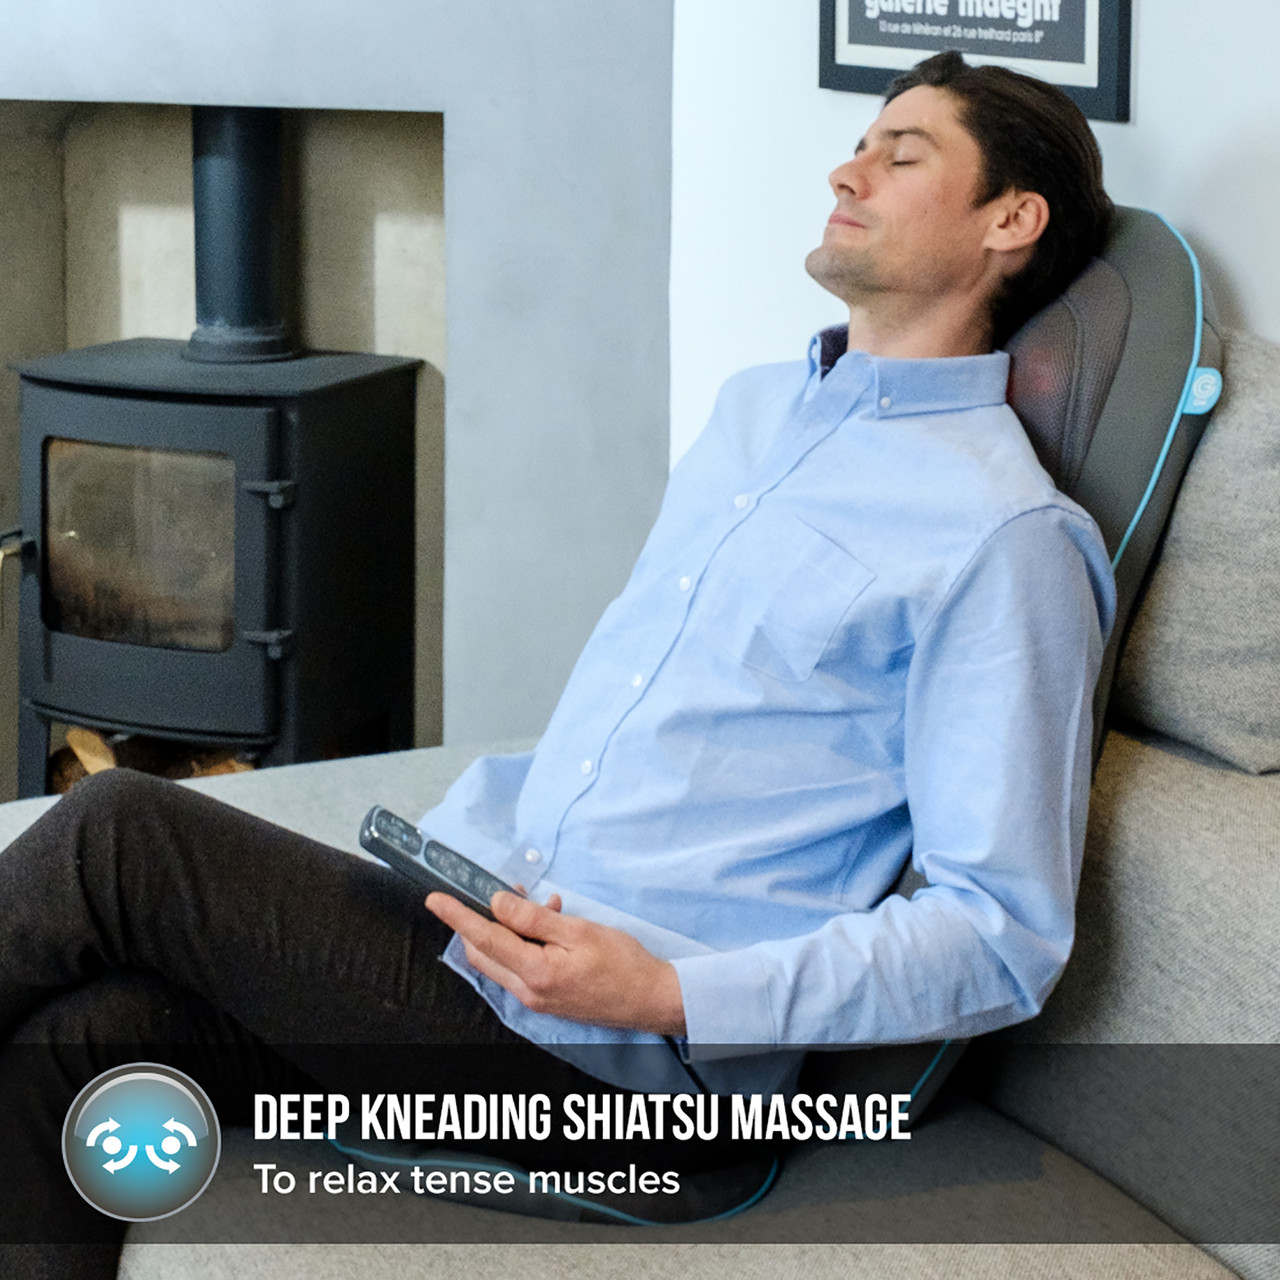 HoMedics Massagesitzauflage Shiatsu Massageauflage Rücken- und  Schultermassagegerät - Deluxe-Massagesessel mit Wärmefunktion,  Vibrationsmassage, entspannt Schulter-, Rücken- und Oberschenkel - Grau